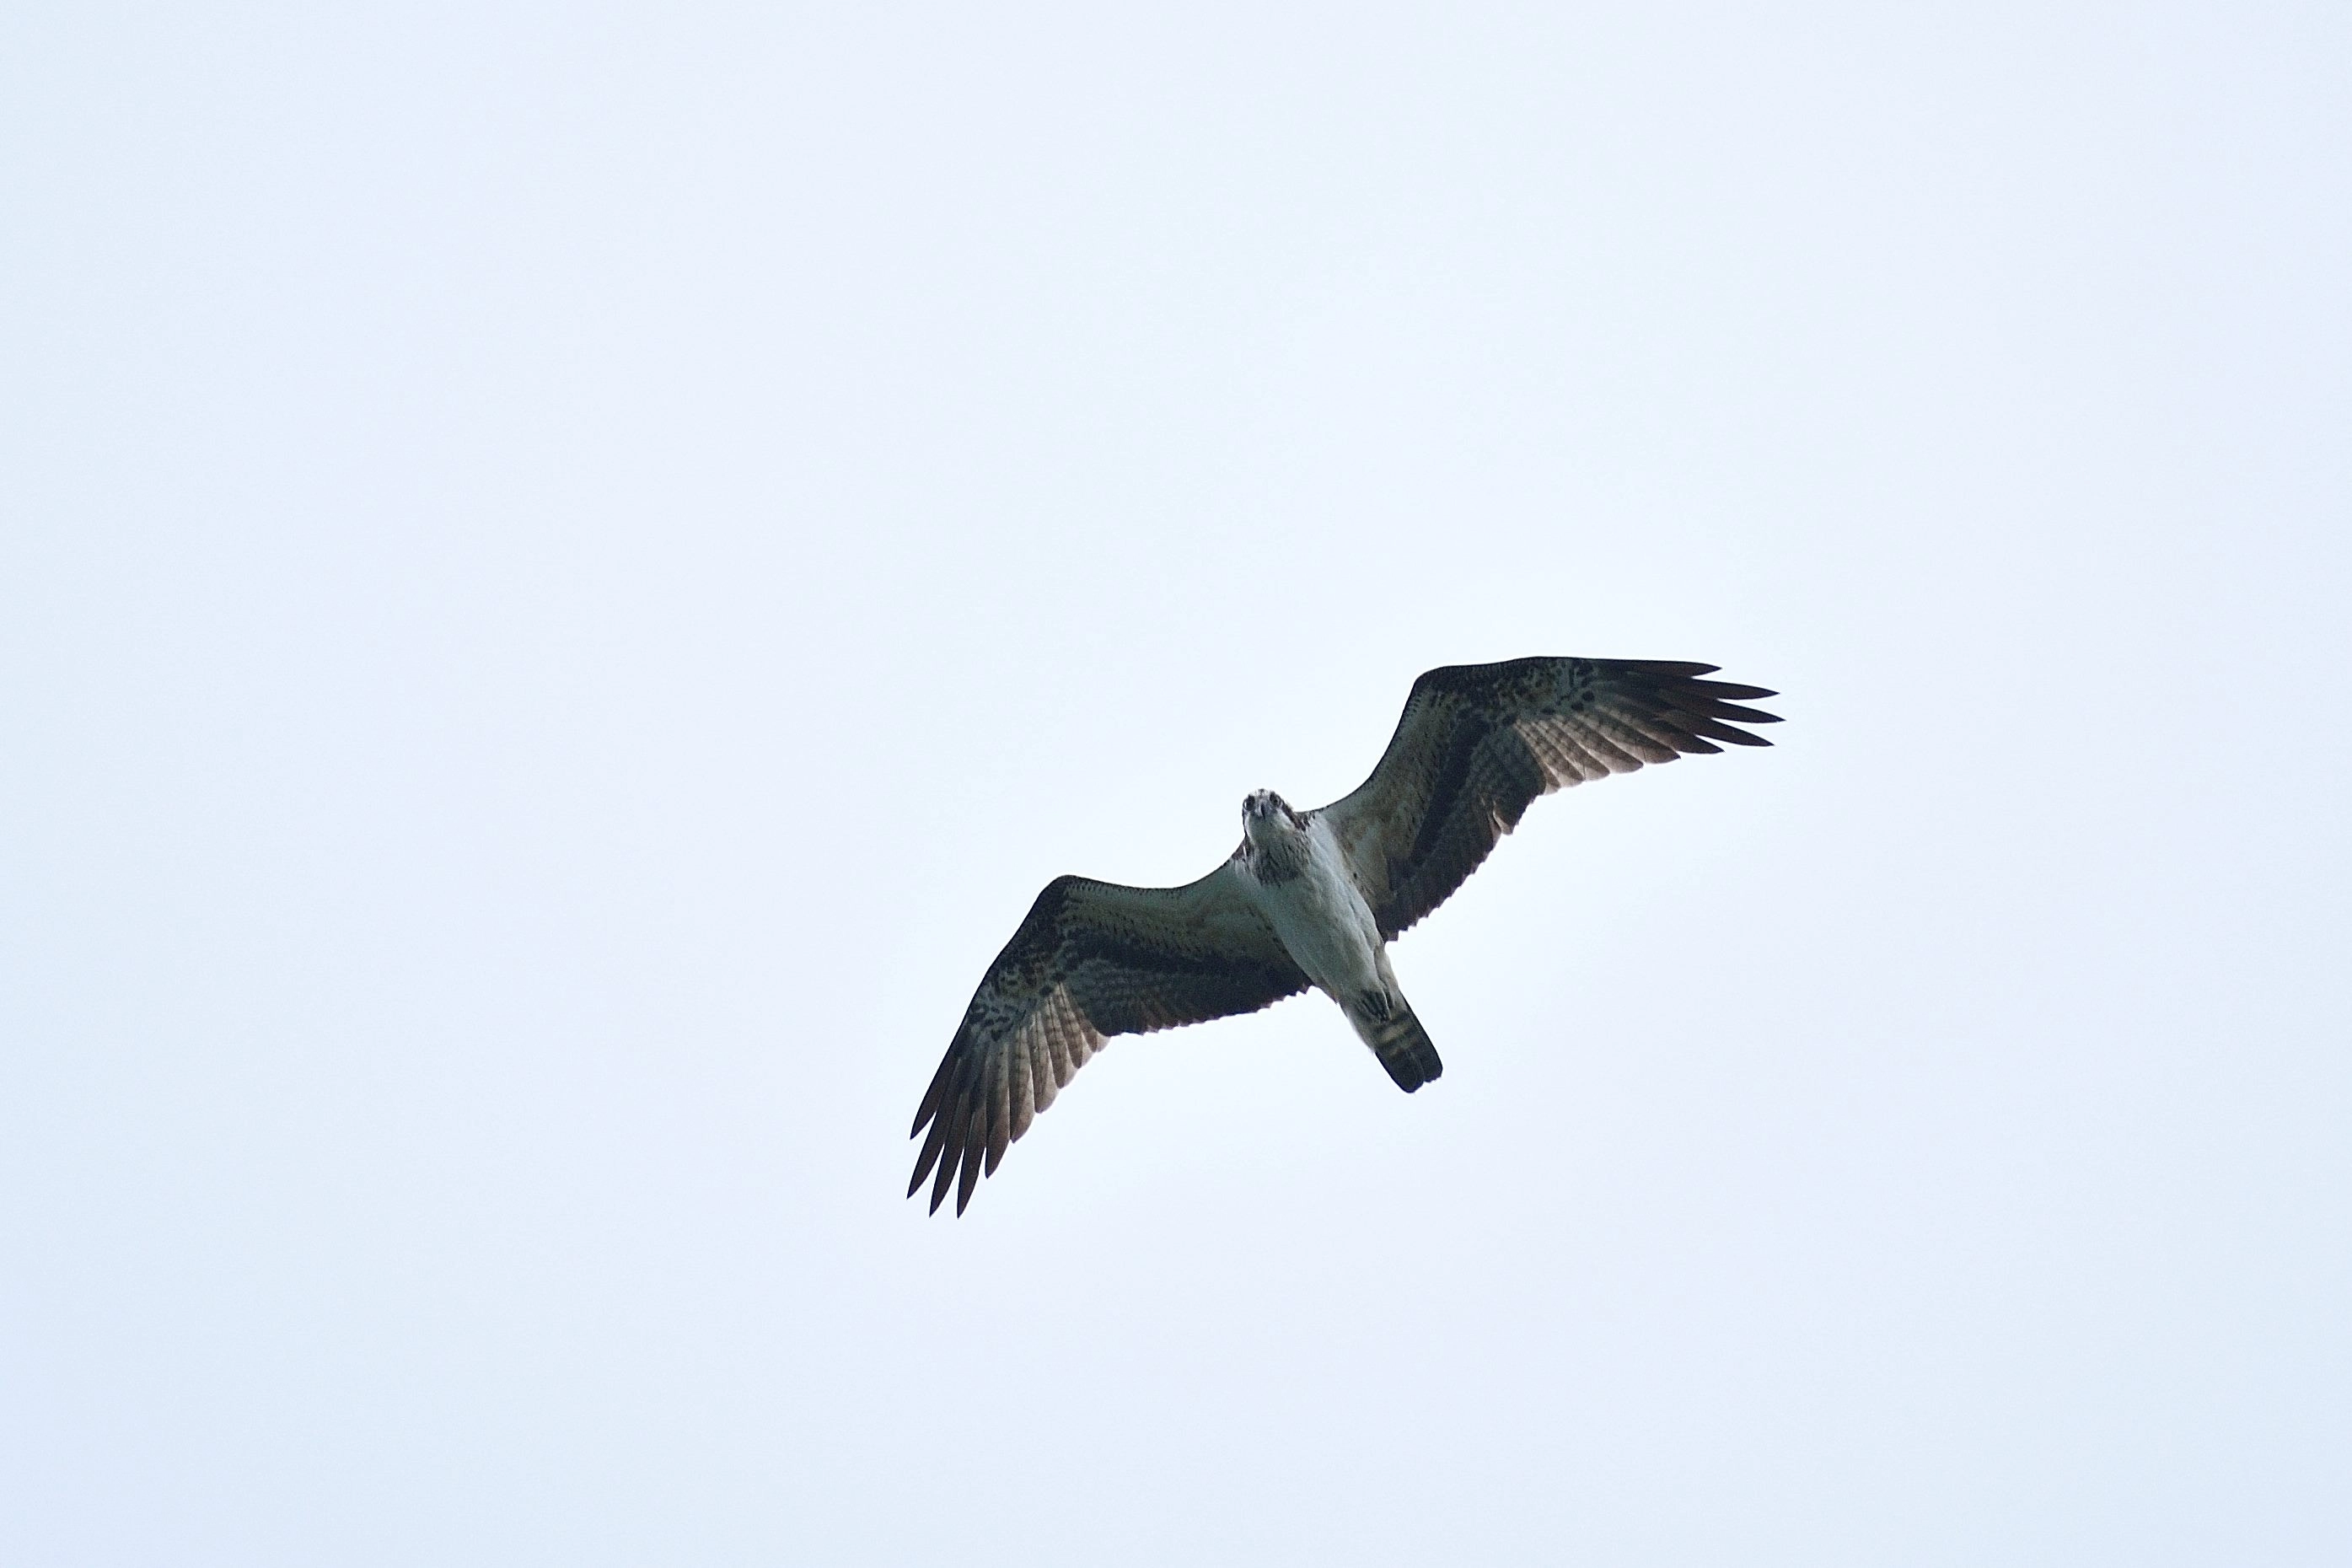 魚鷹(稀有保育類)可俯衝入水捕食魚類。